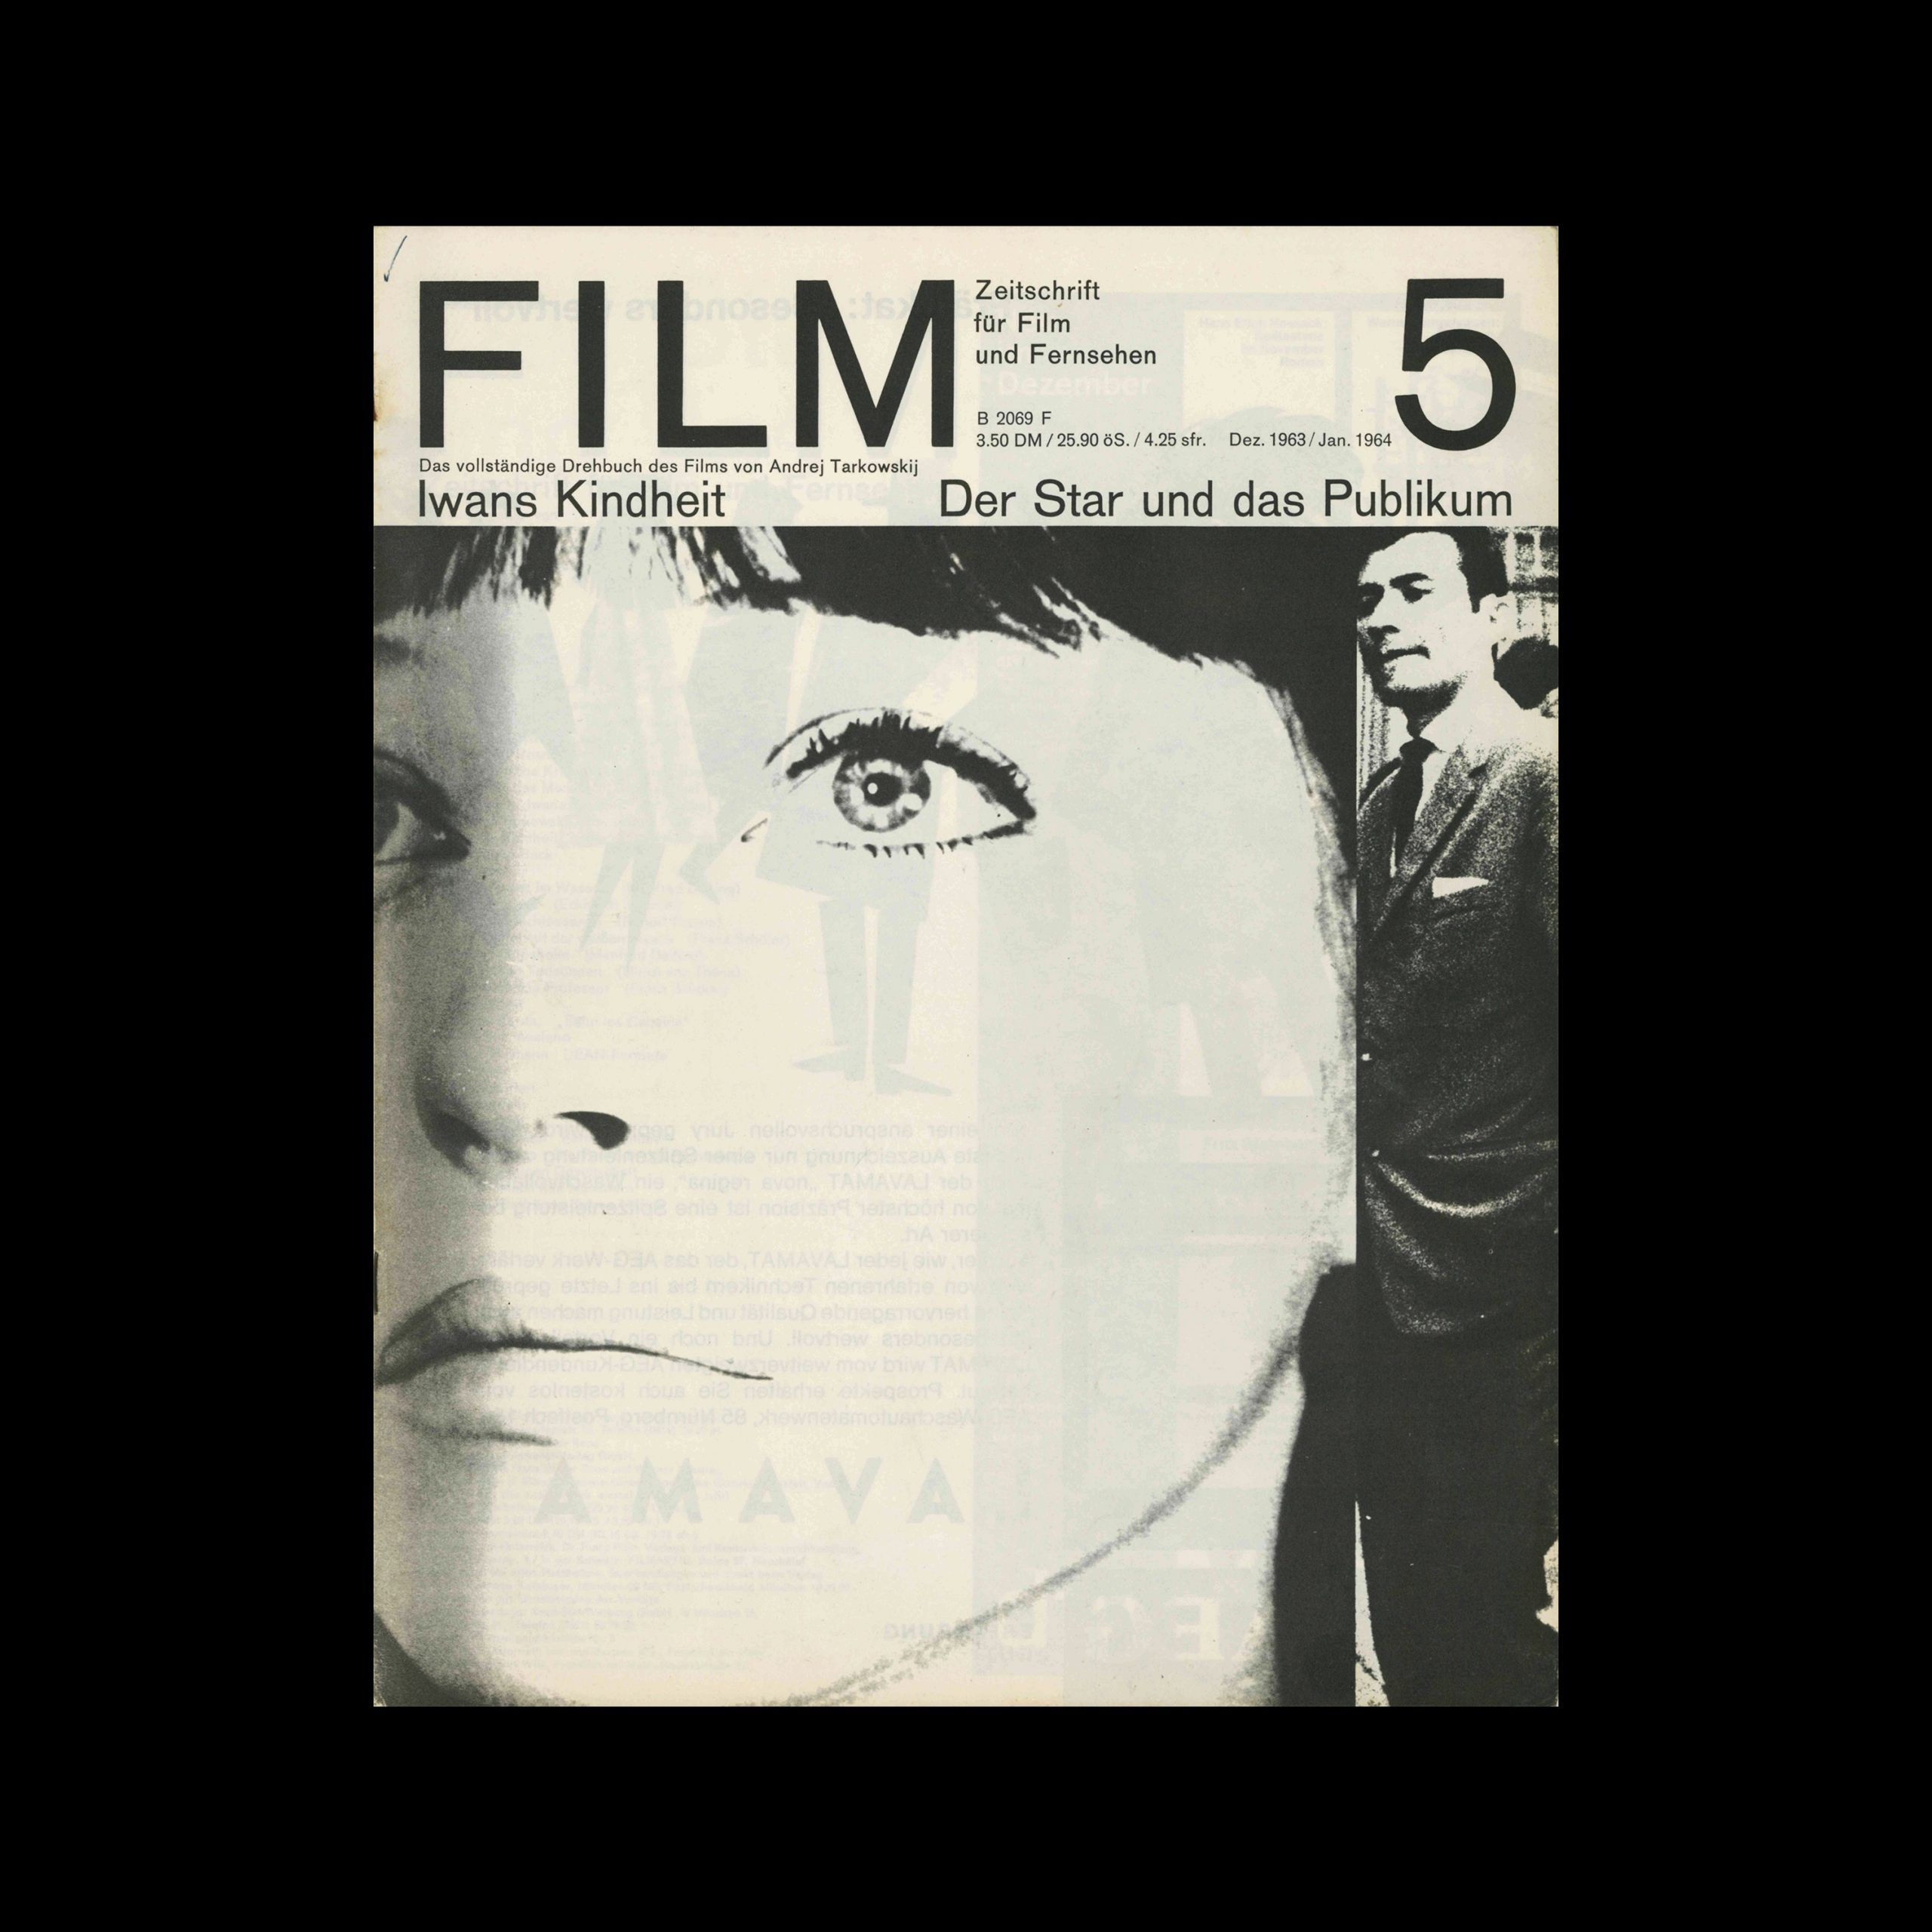 Film – Zeitschrift Für Film, 5, 1963, designed by Hans Hillmann